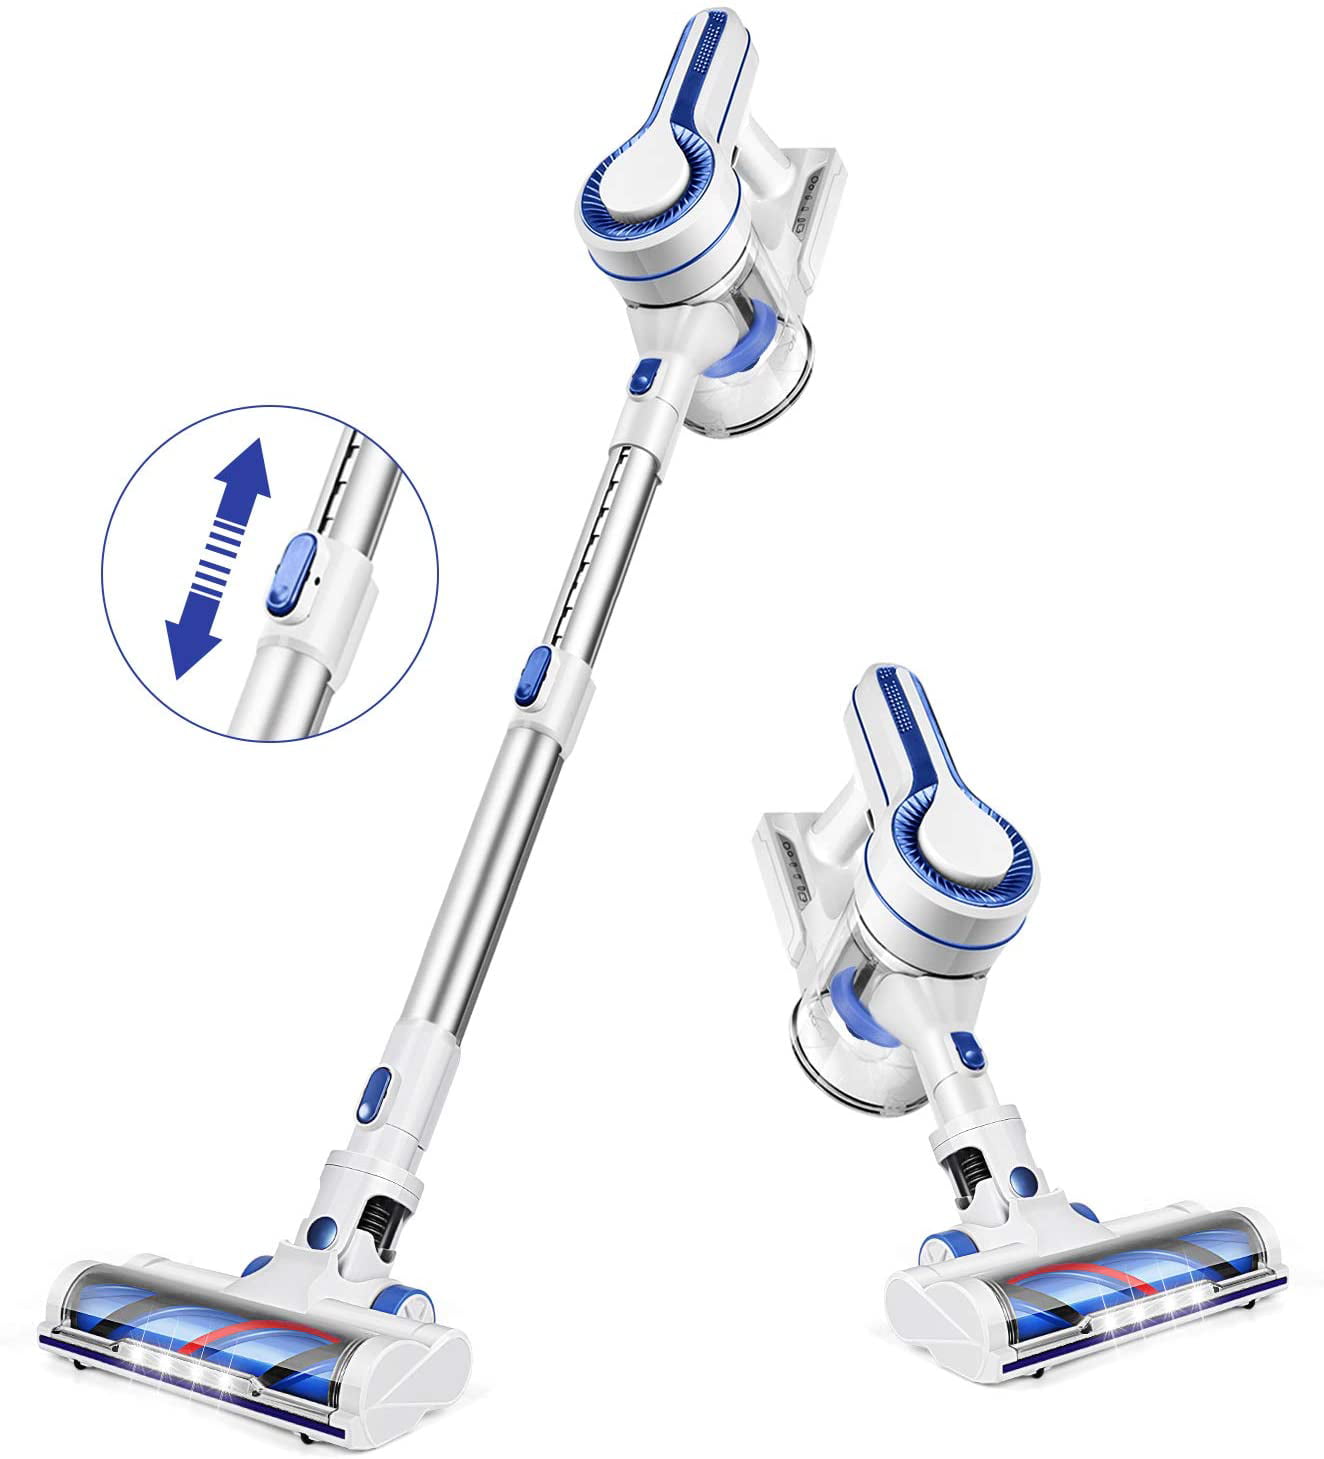 2.7" Ultra Slim A450 Self-Charging Robot Vacuum APOSEN Robotic Vacuum Cleaner 